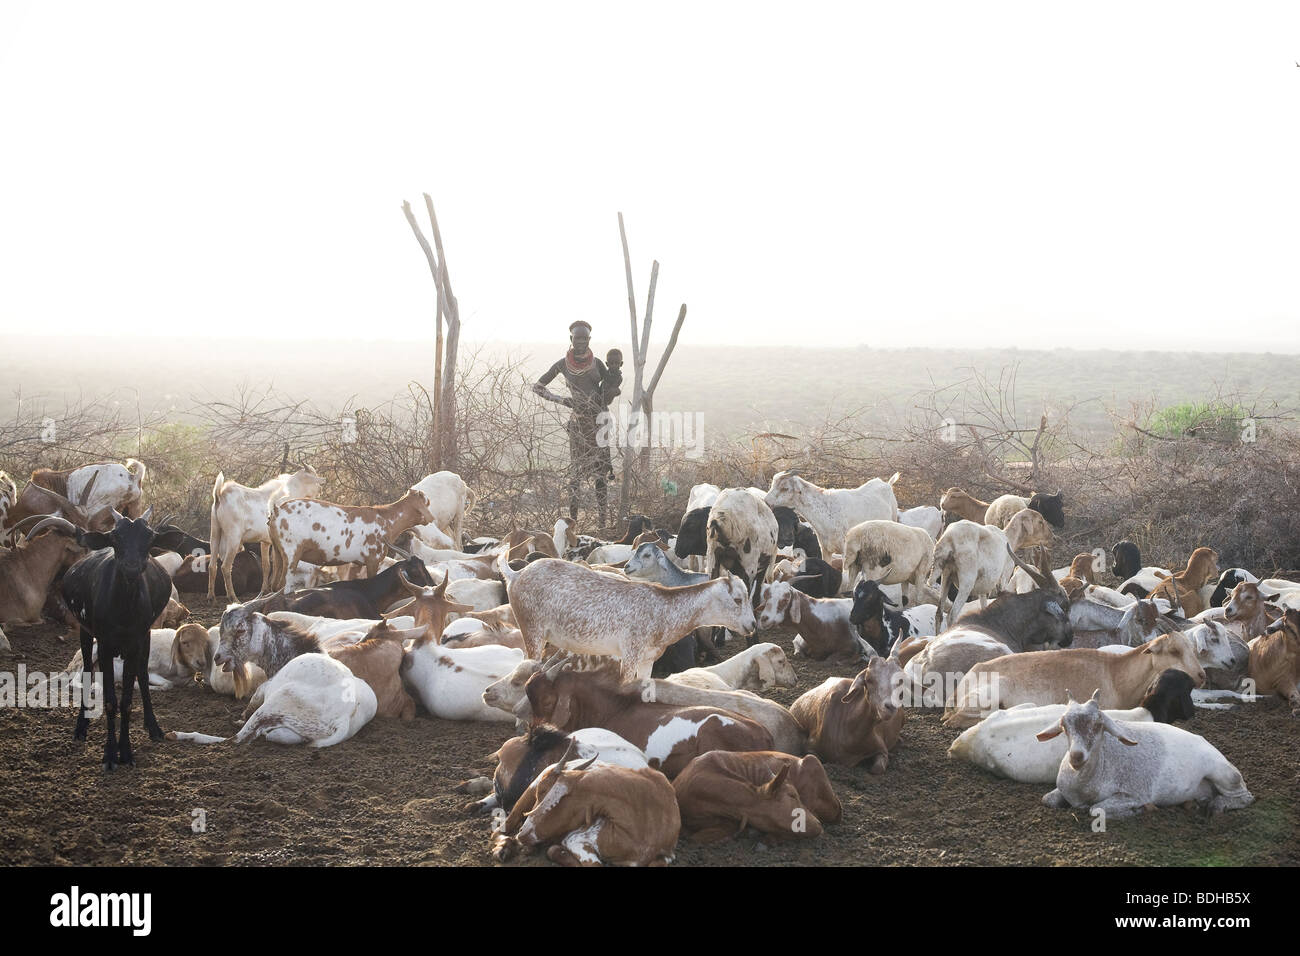 Una donna con bambino sorge in corrispondenza del bordo di un perno pieno di capre in una luce mattutina chiara nel deserto. Foto Stock